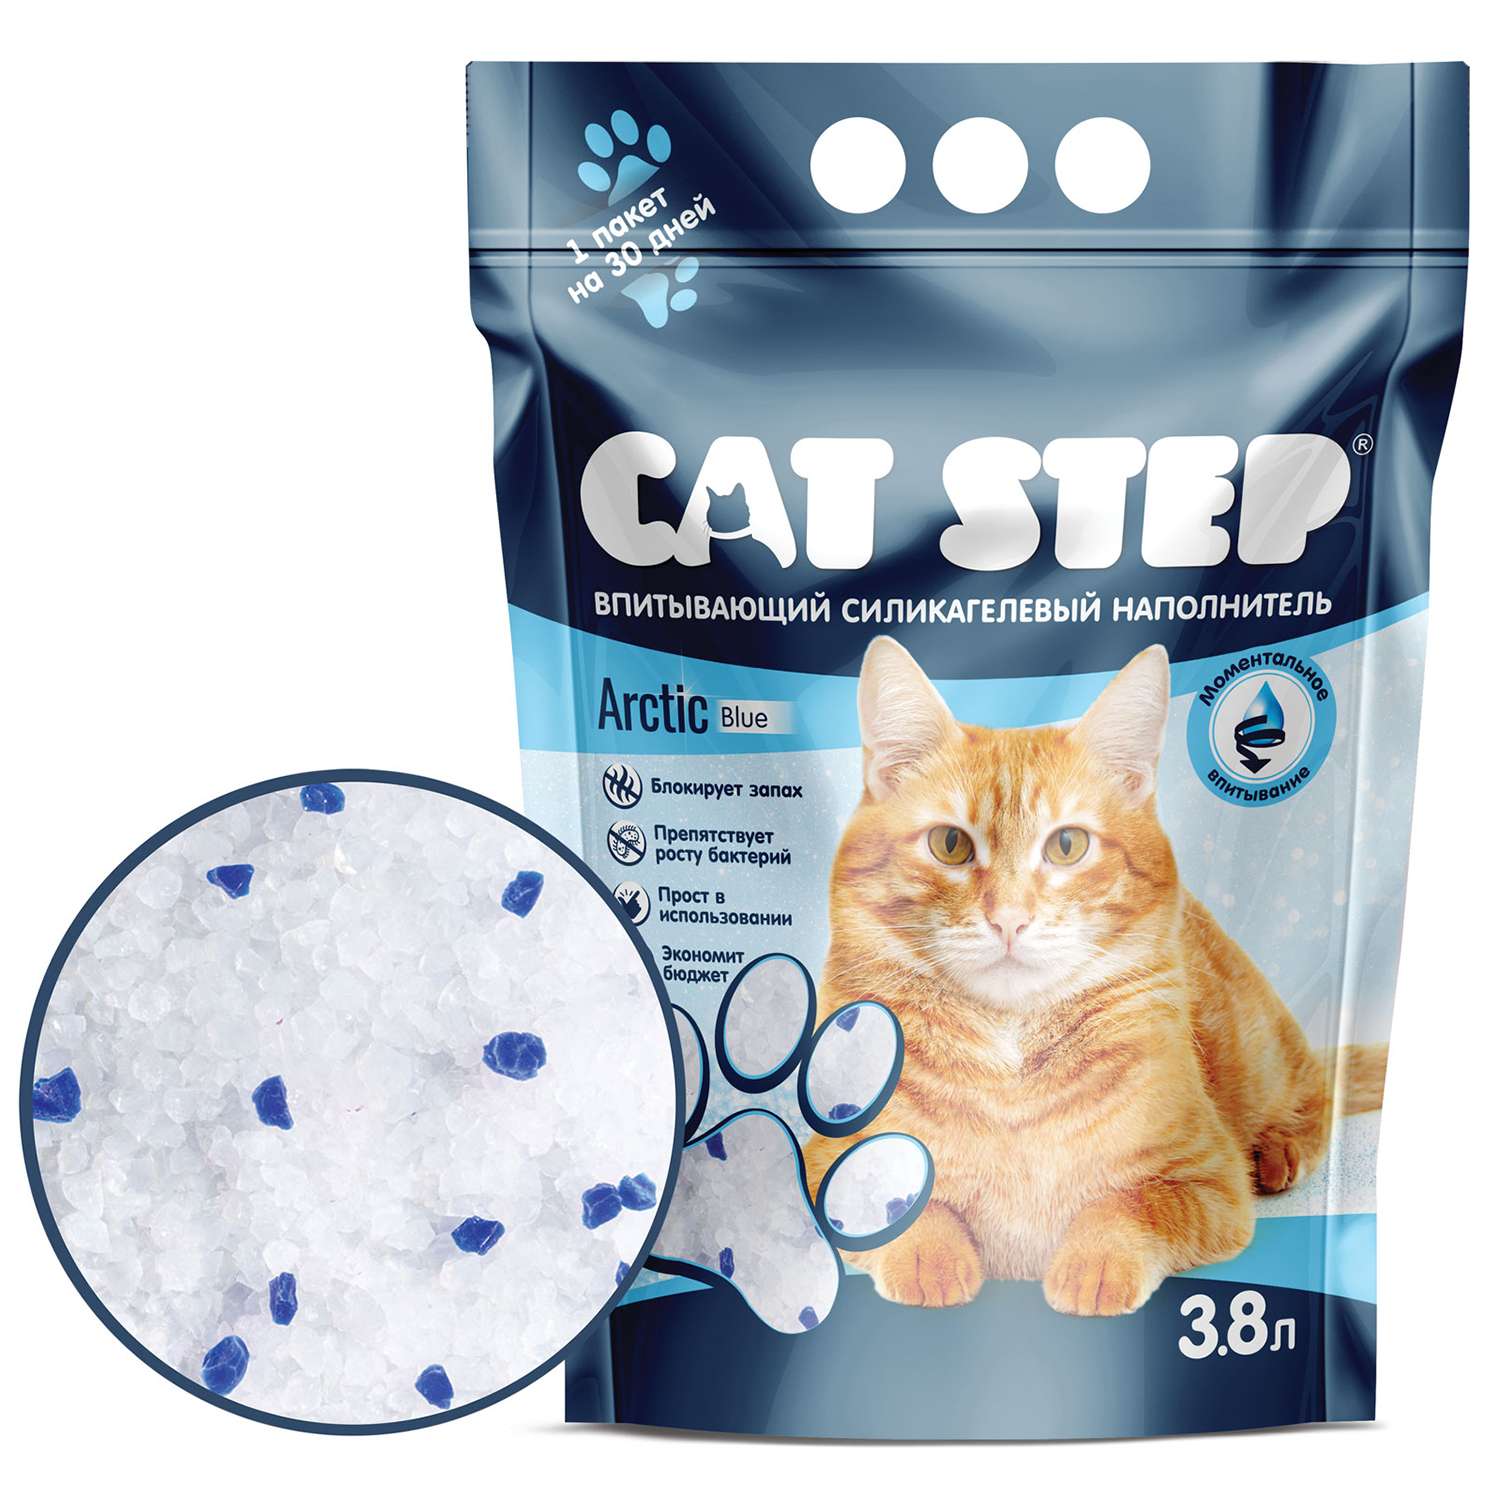 Наполнитель Cat Step Arctic Blue впитывающий силикагелевый 3.8л - фото 1